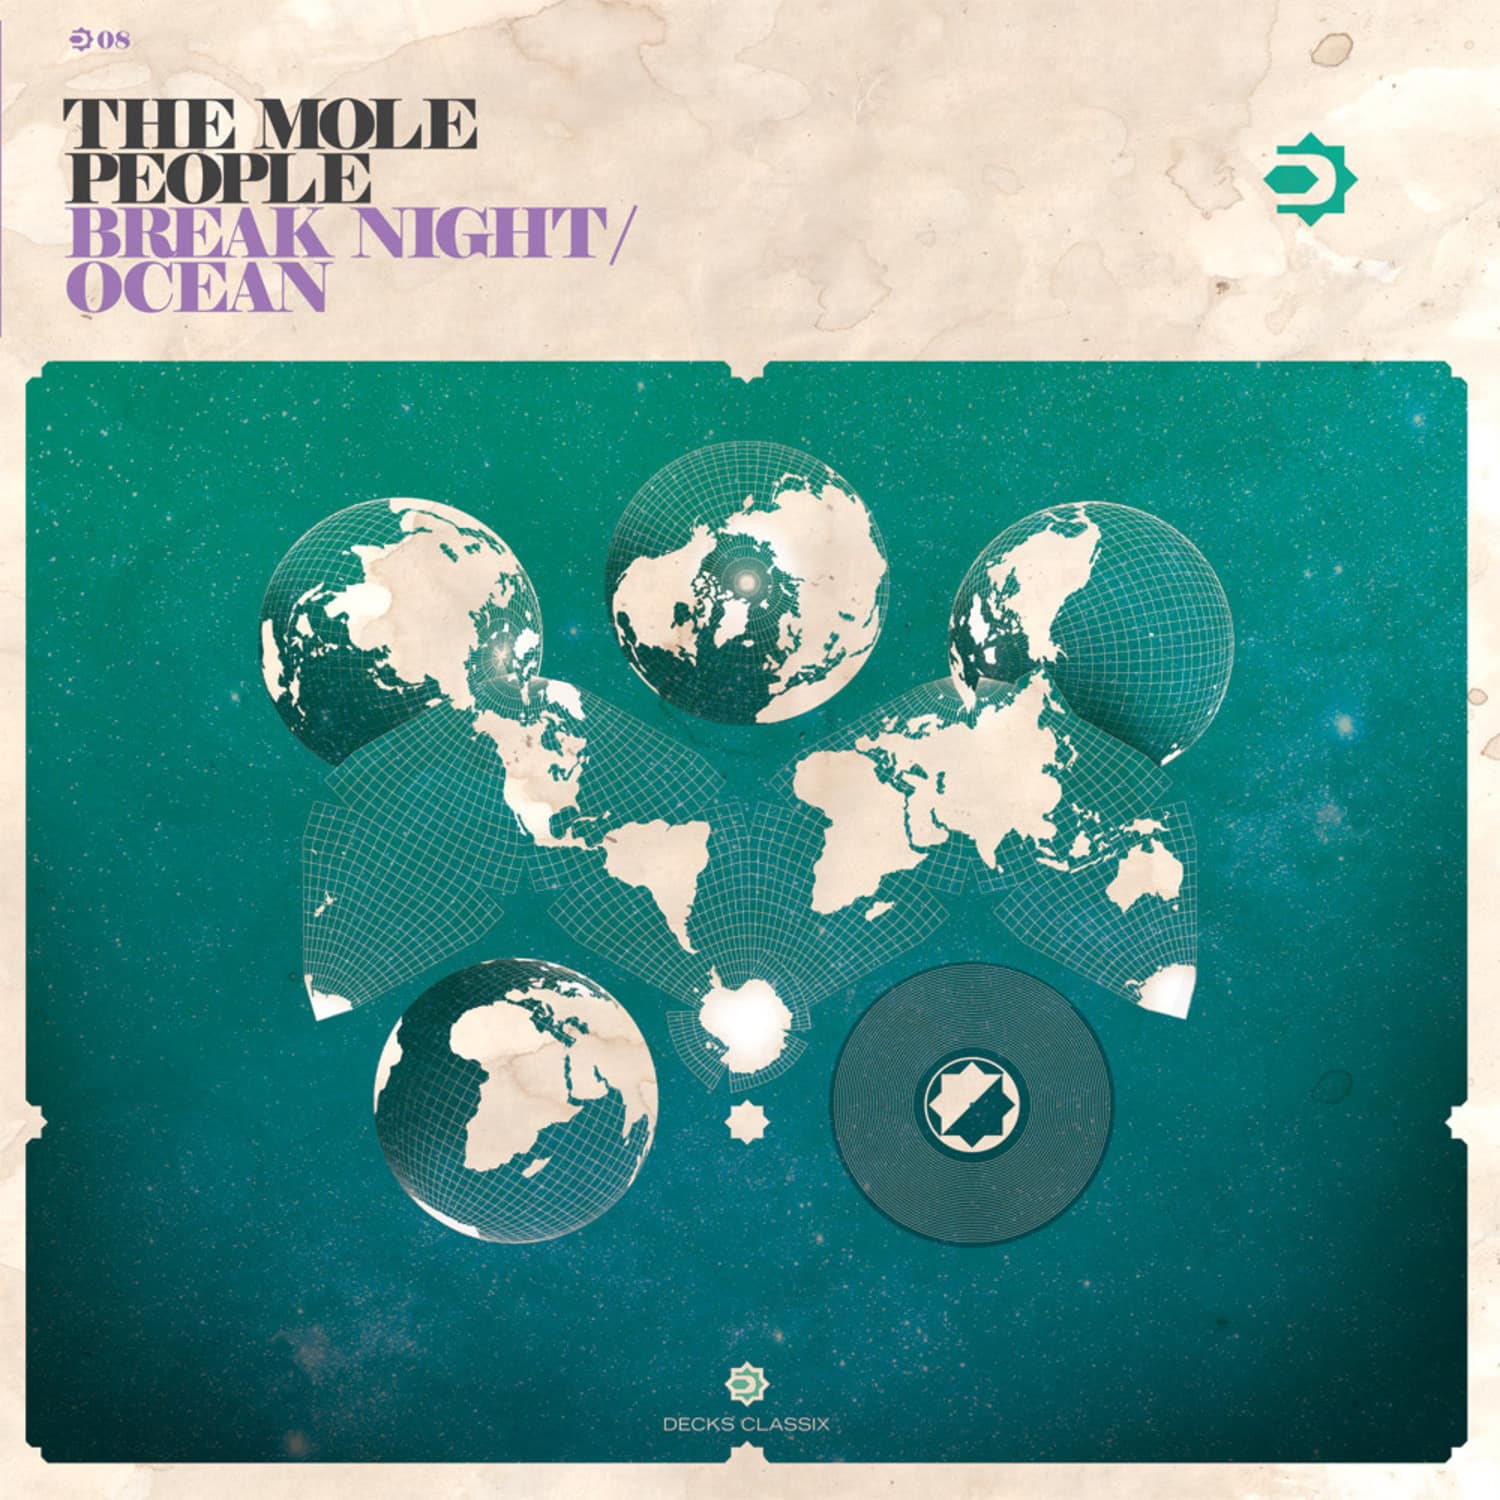 The Mole People - BREAK NIGHT / OCEAN